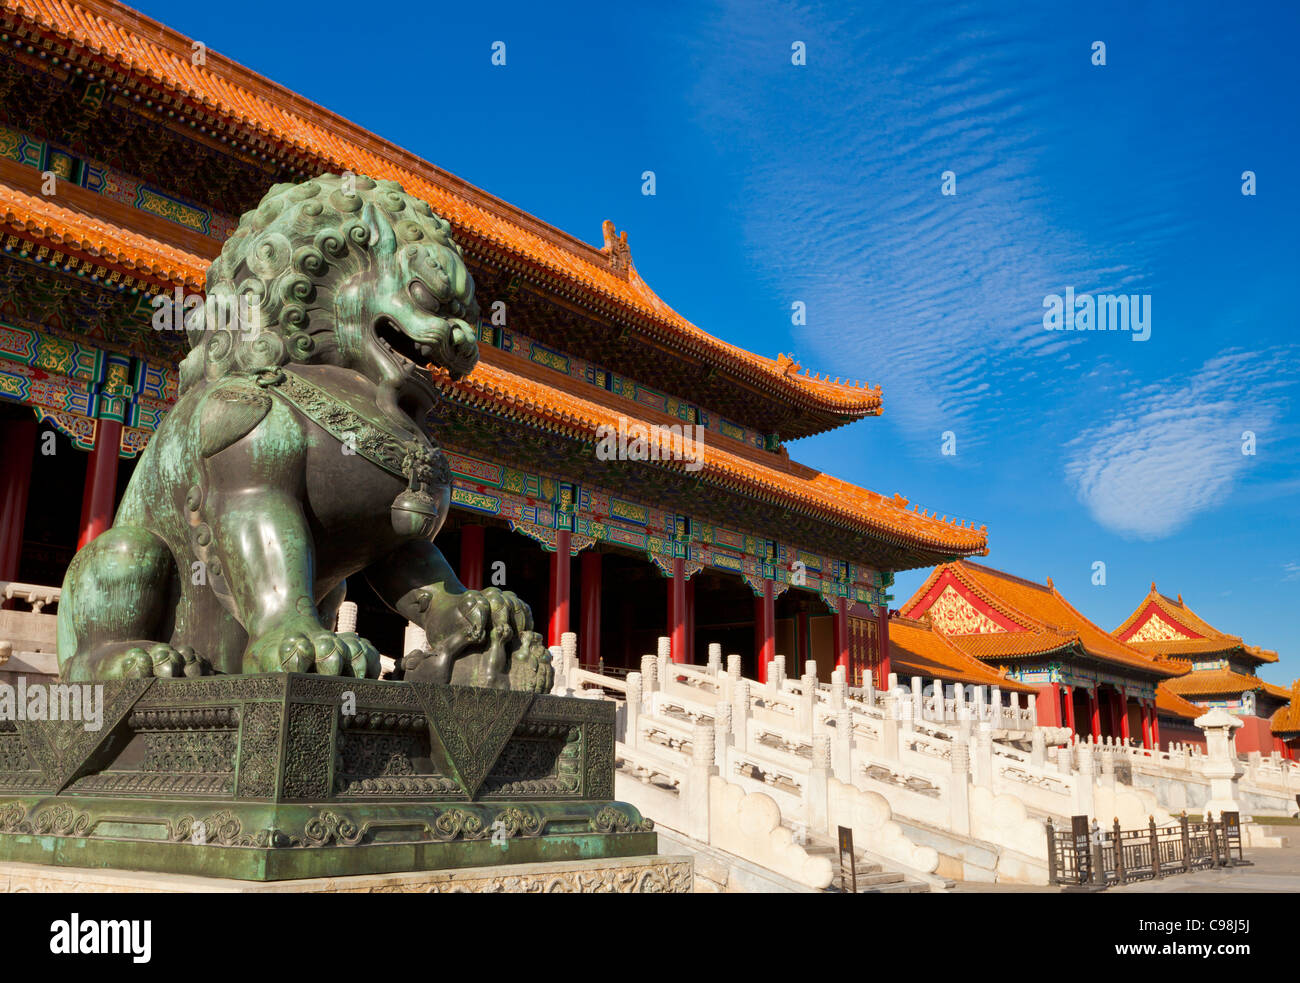 Leone di Bronzo, Porta della suprema armonia, corte esterna, la Città Proibita di Pechino, Repubblica Popolare Cinese, in Asia Foto Stock